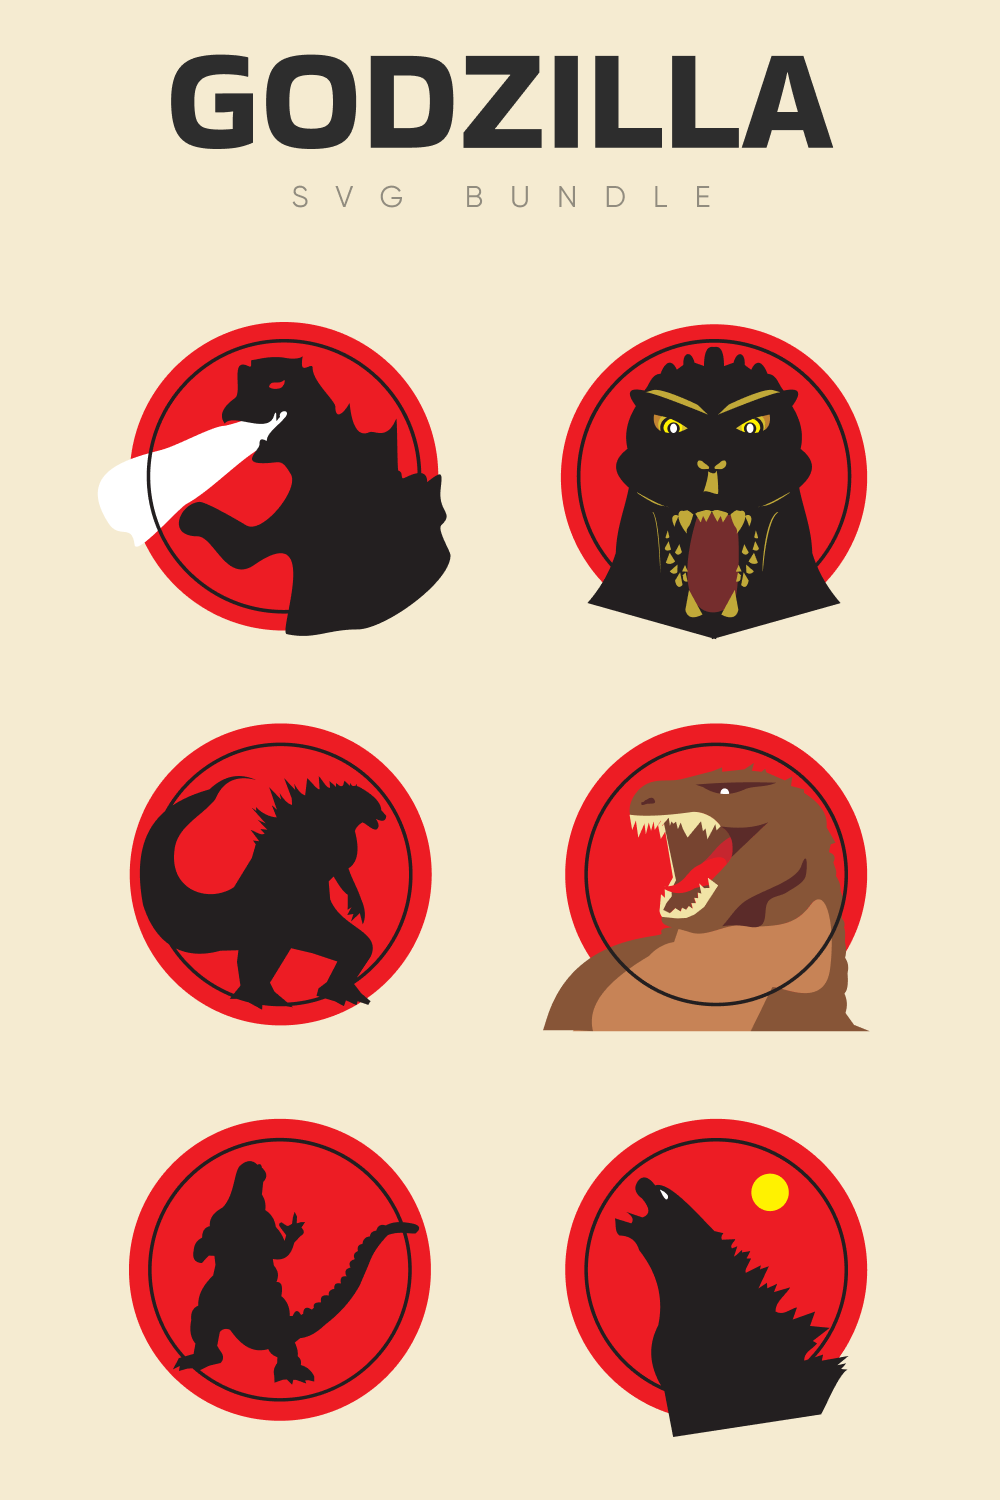 Godzilla SVG bundle.